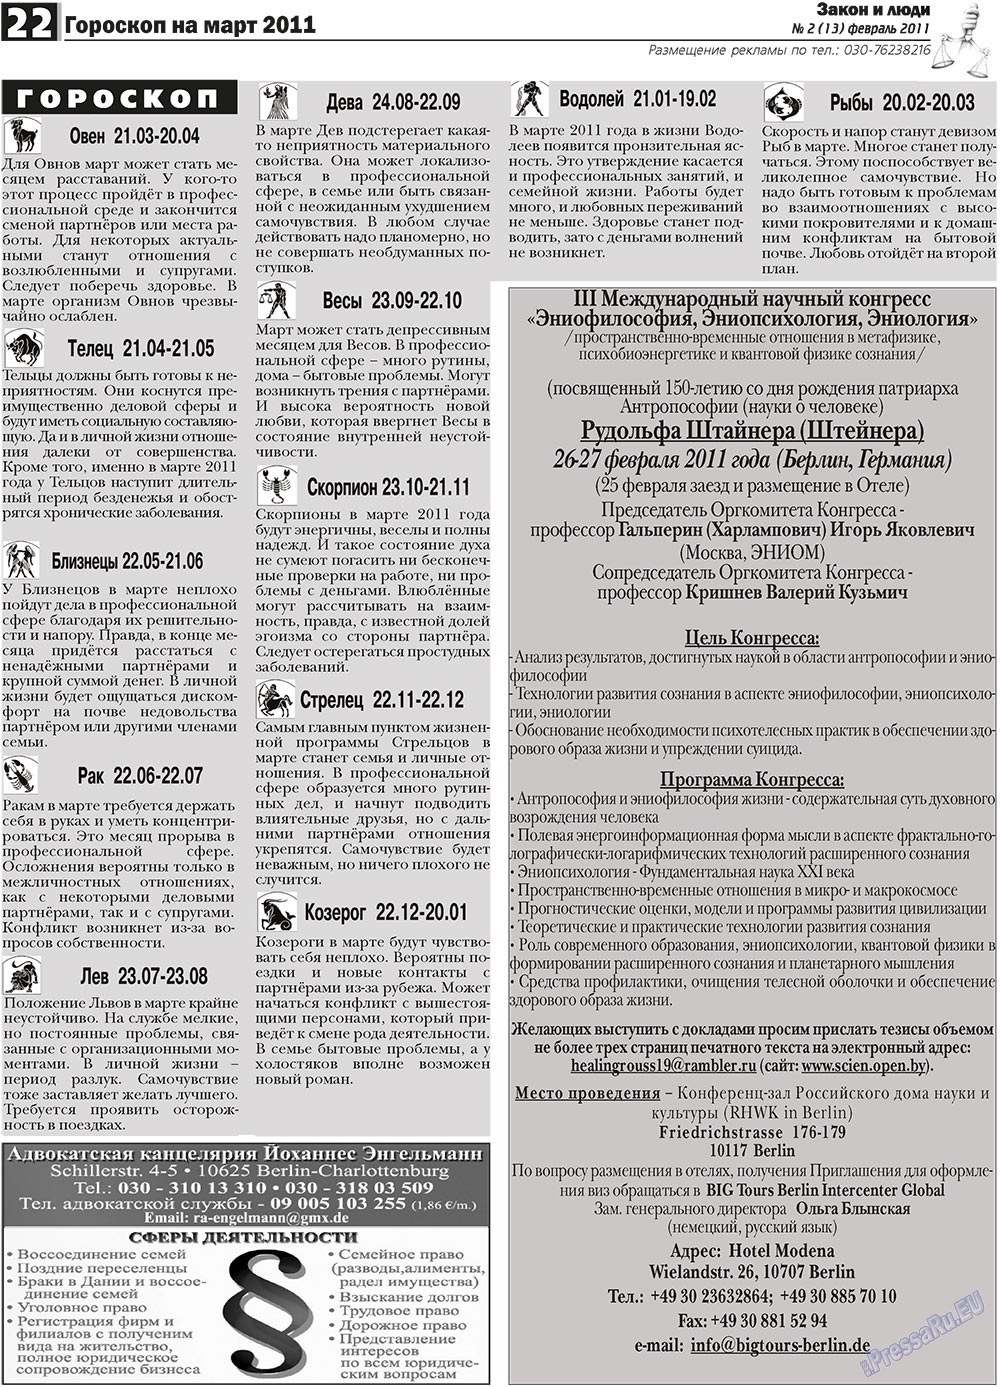 Закон и люди, газета. 2011 №2 стр.22